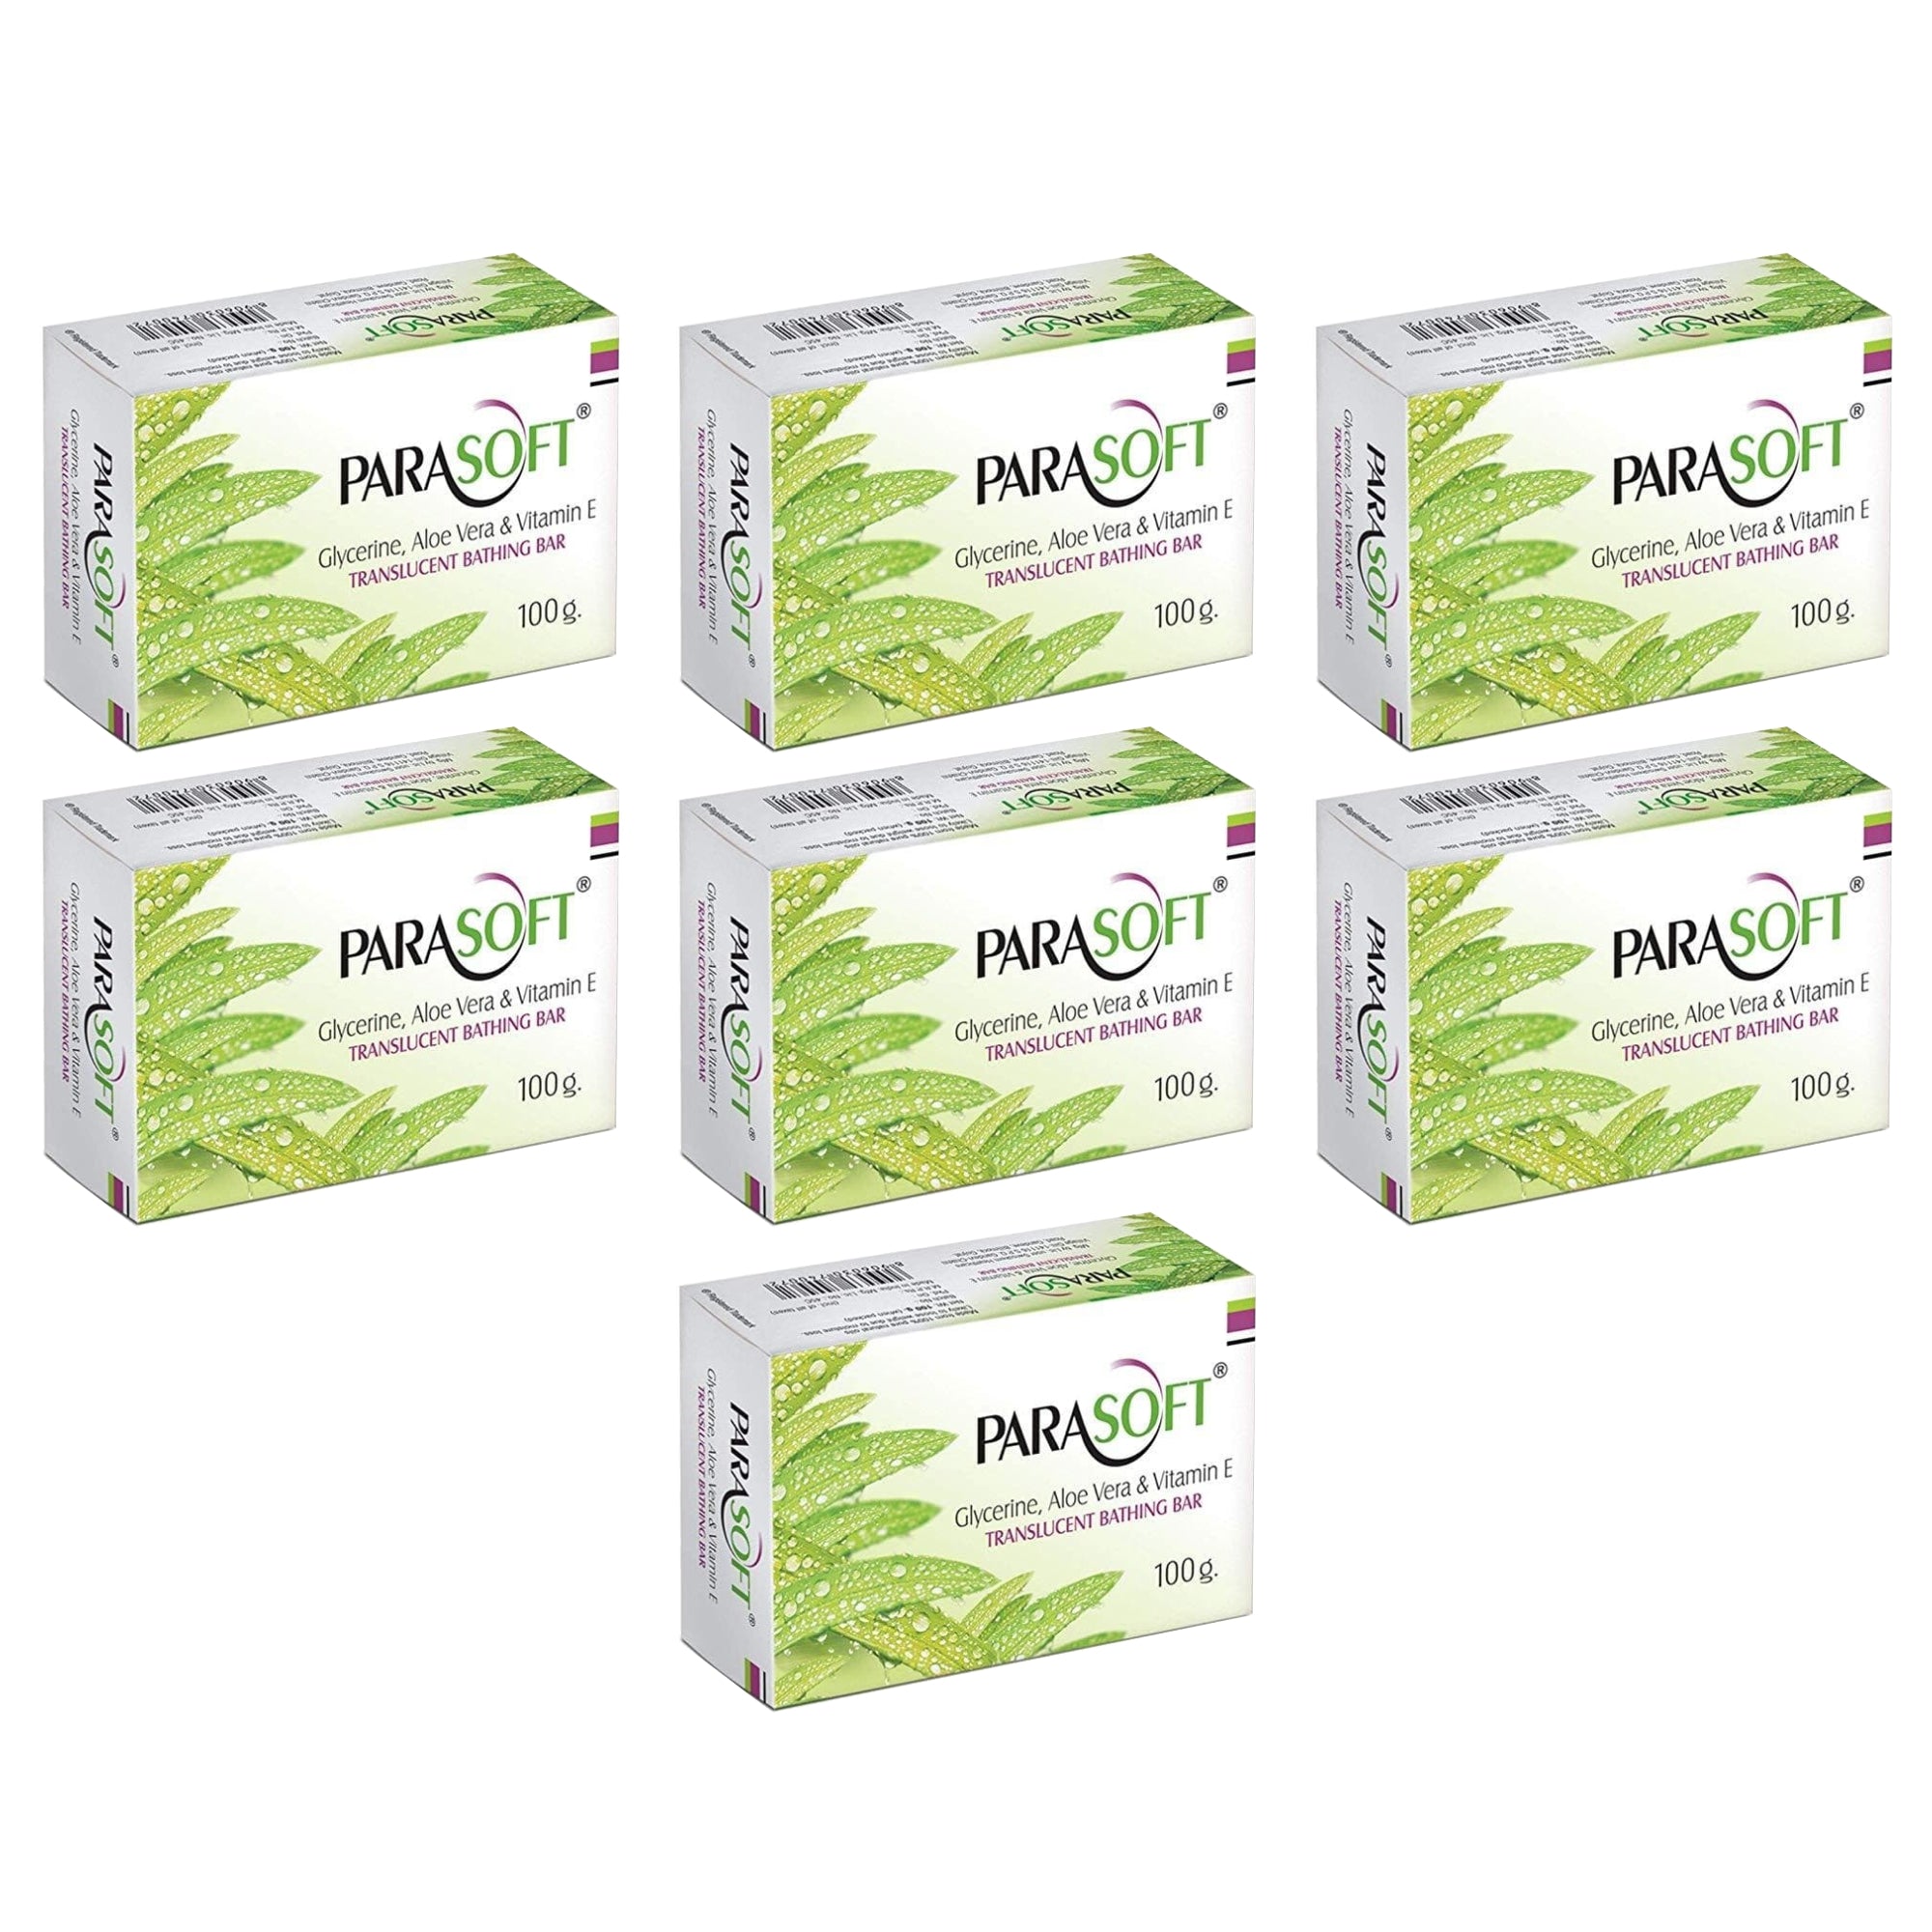 Shoprythm Dry,Parasoft Pack of 7 Salve Parasoft Soap 100g